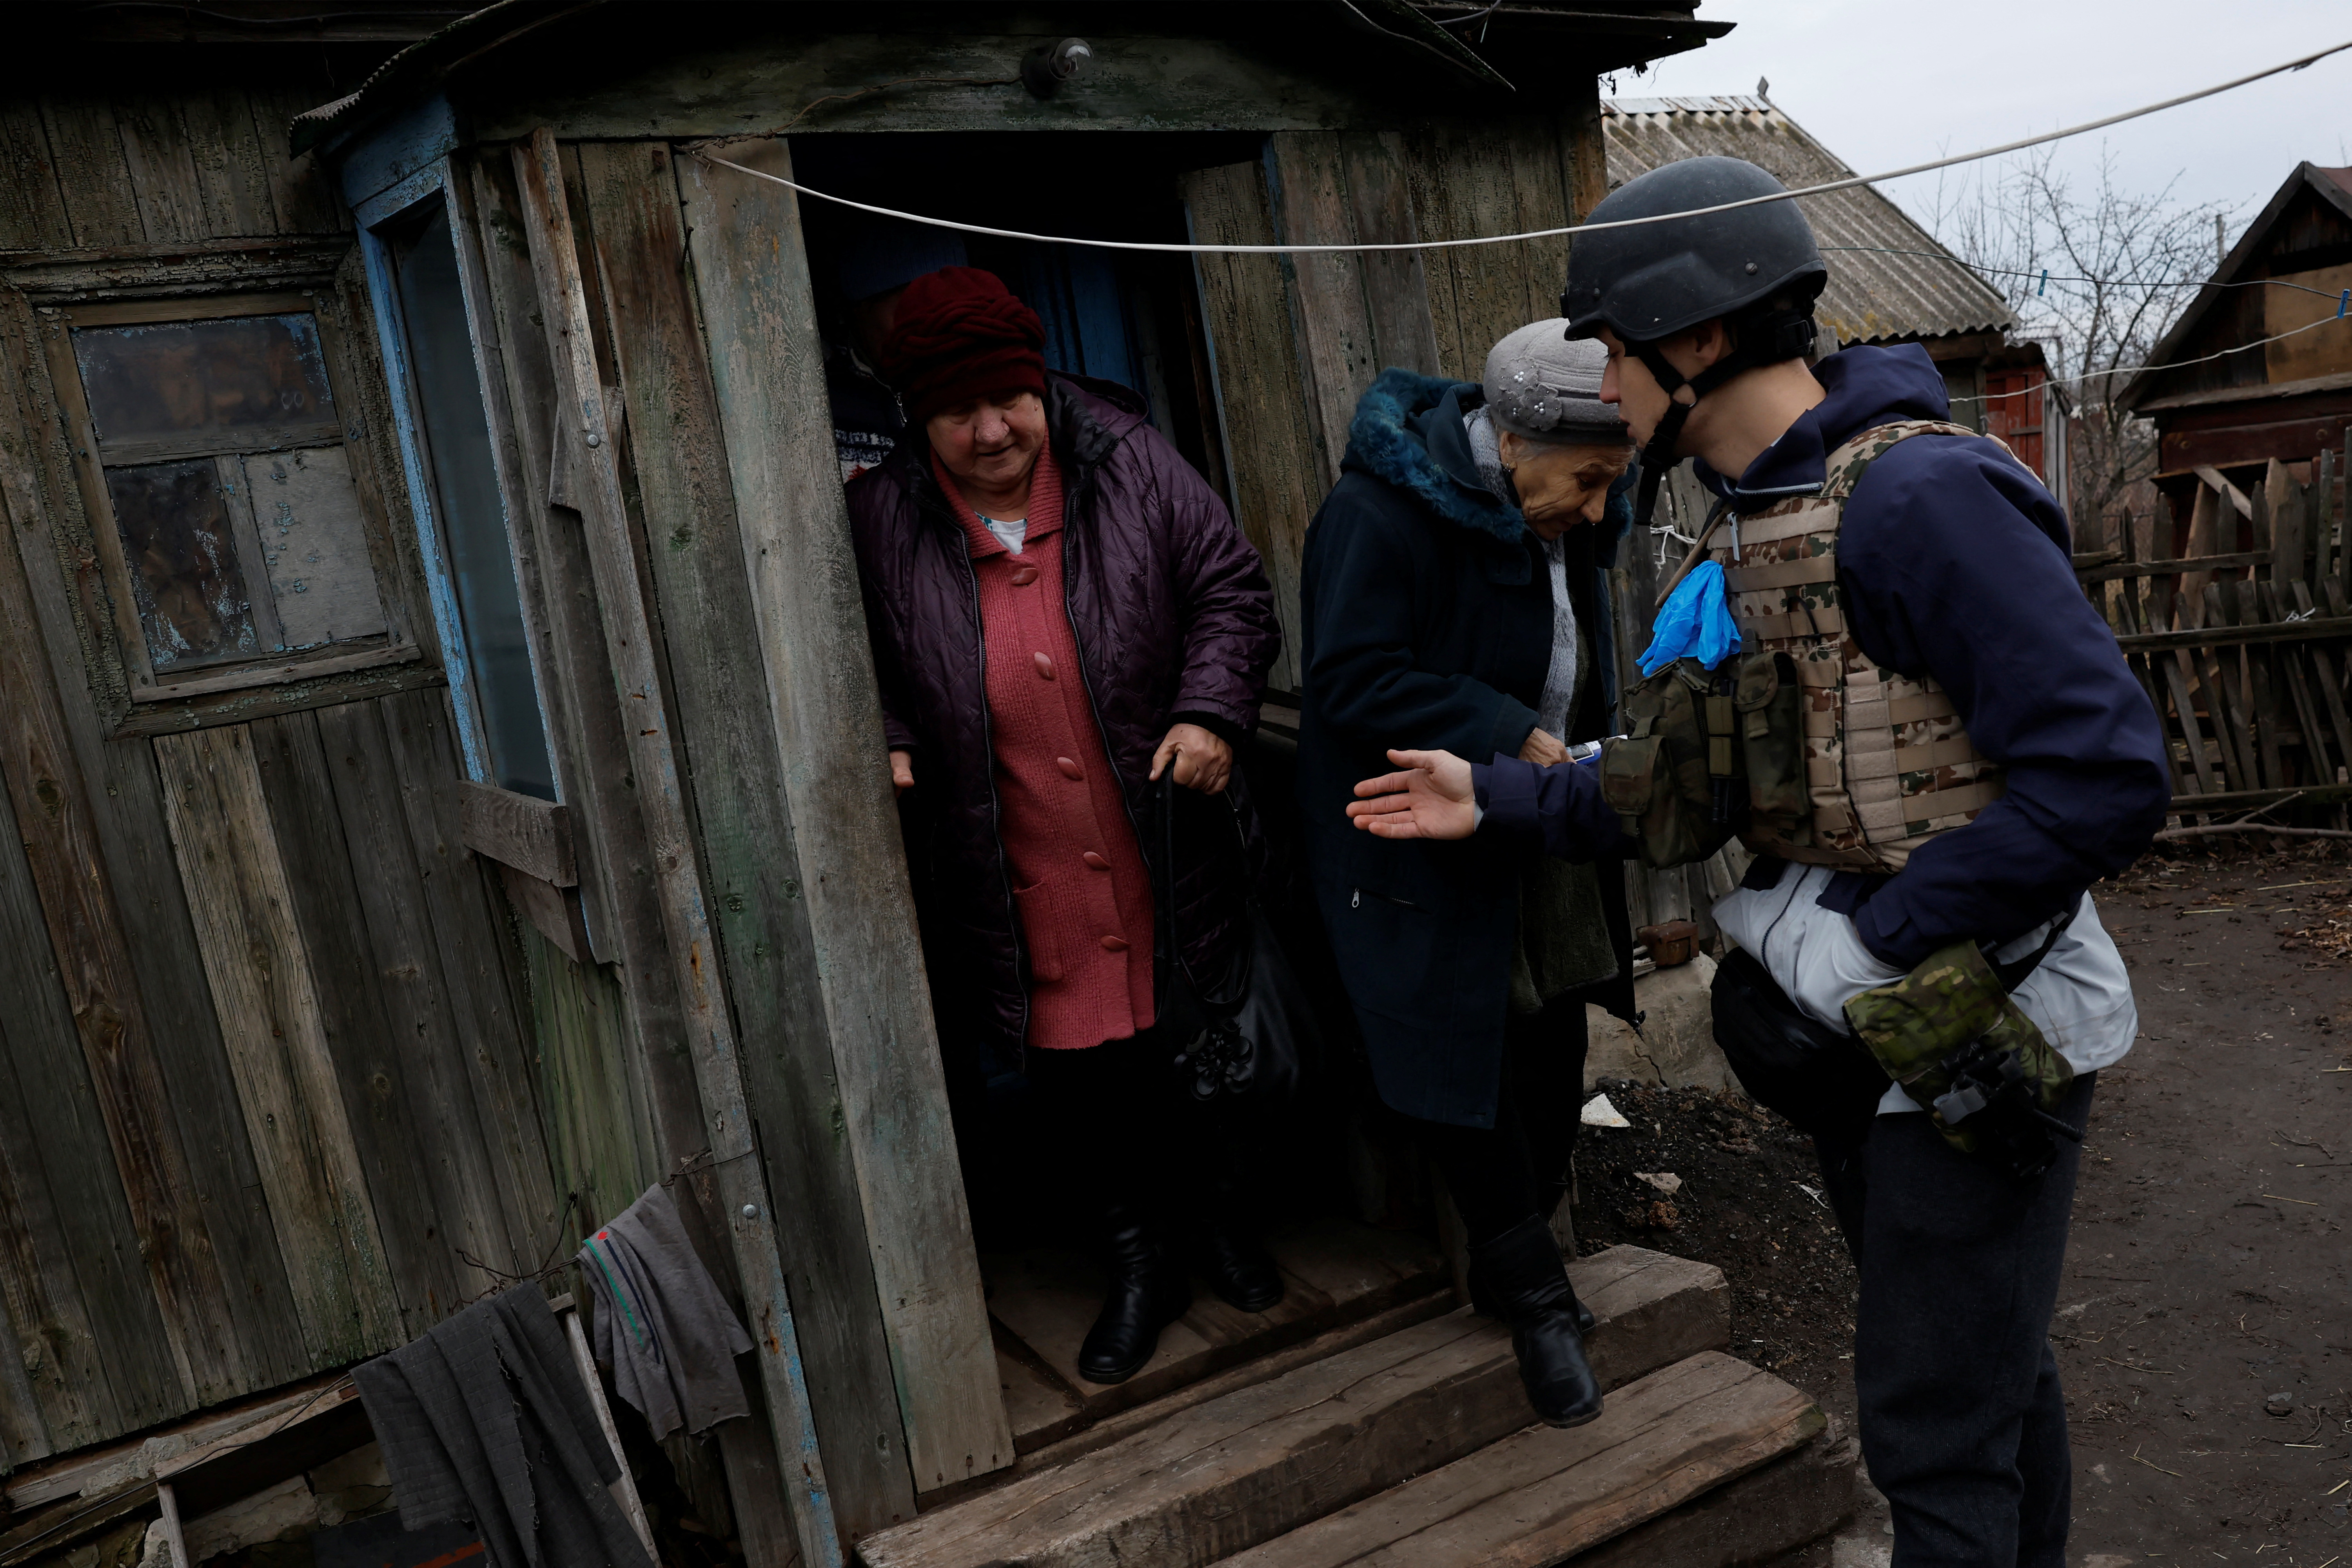 Volunteers help evacuate people in Solidar (Reuters/Clauda Kilkoen)